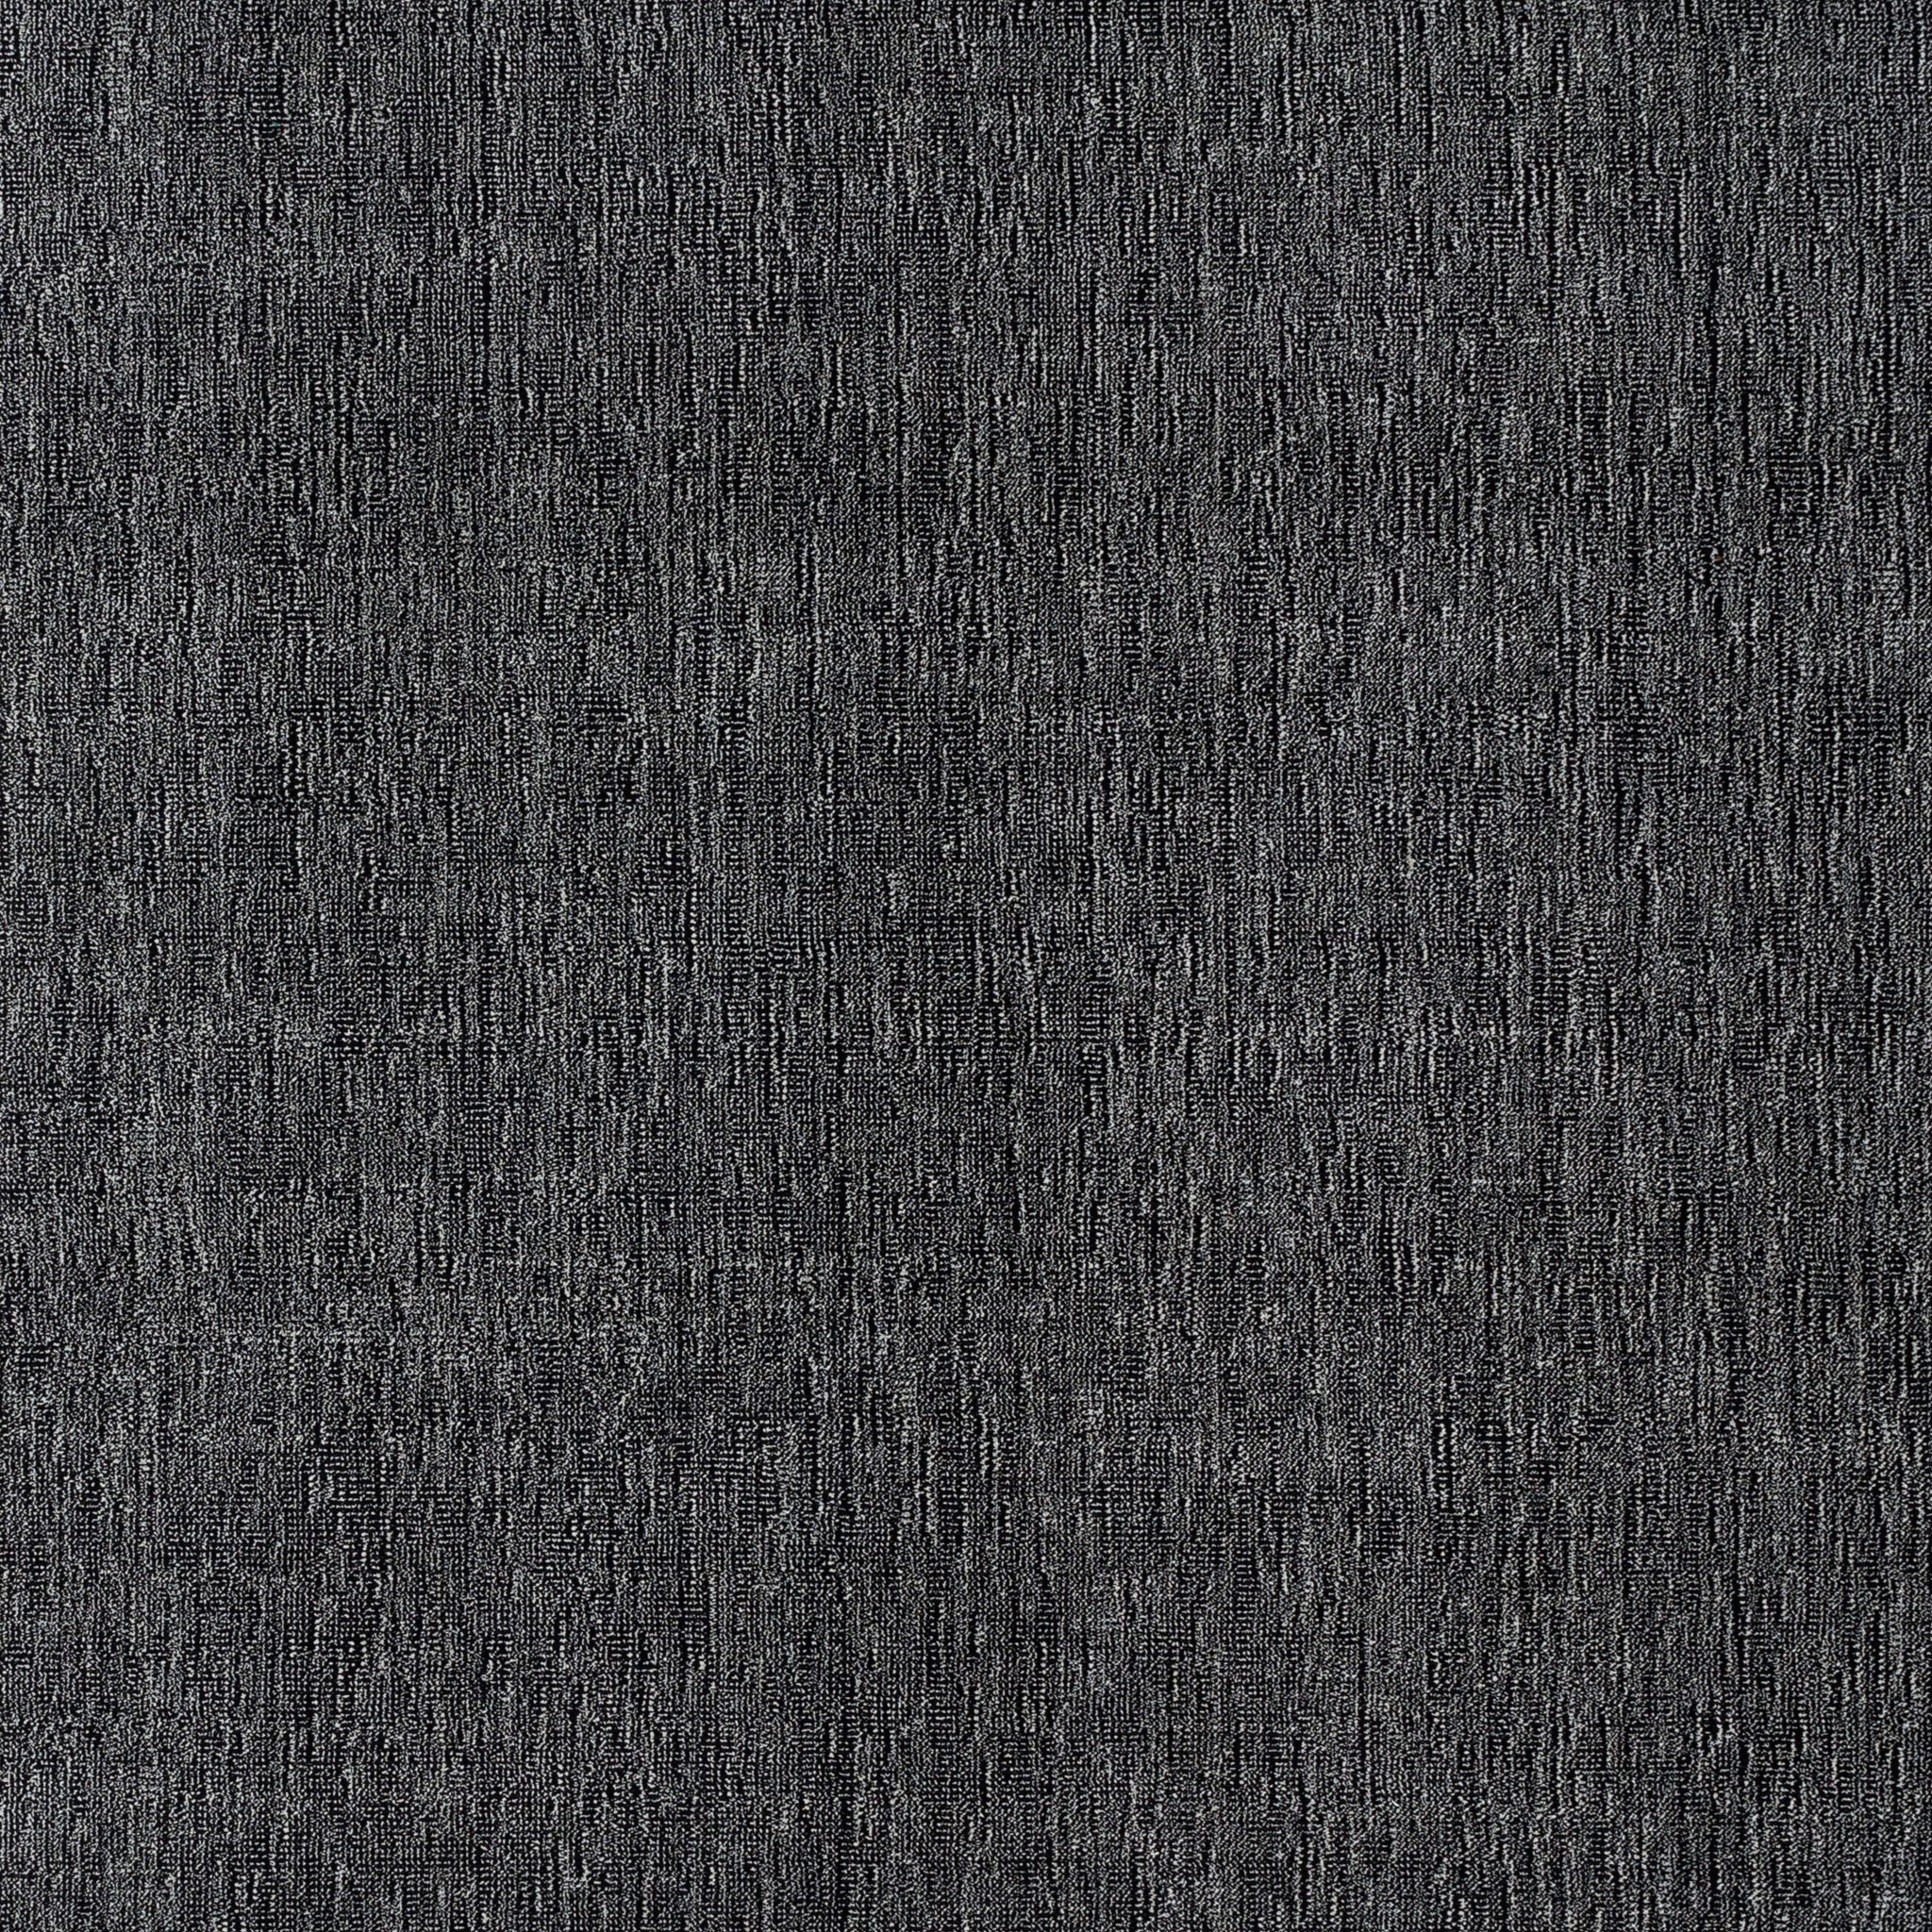 Kipp Hand-Loomed Carpet, Onyx Default Title